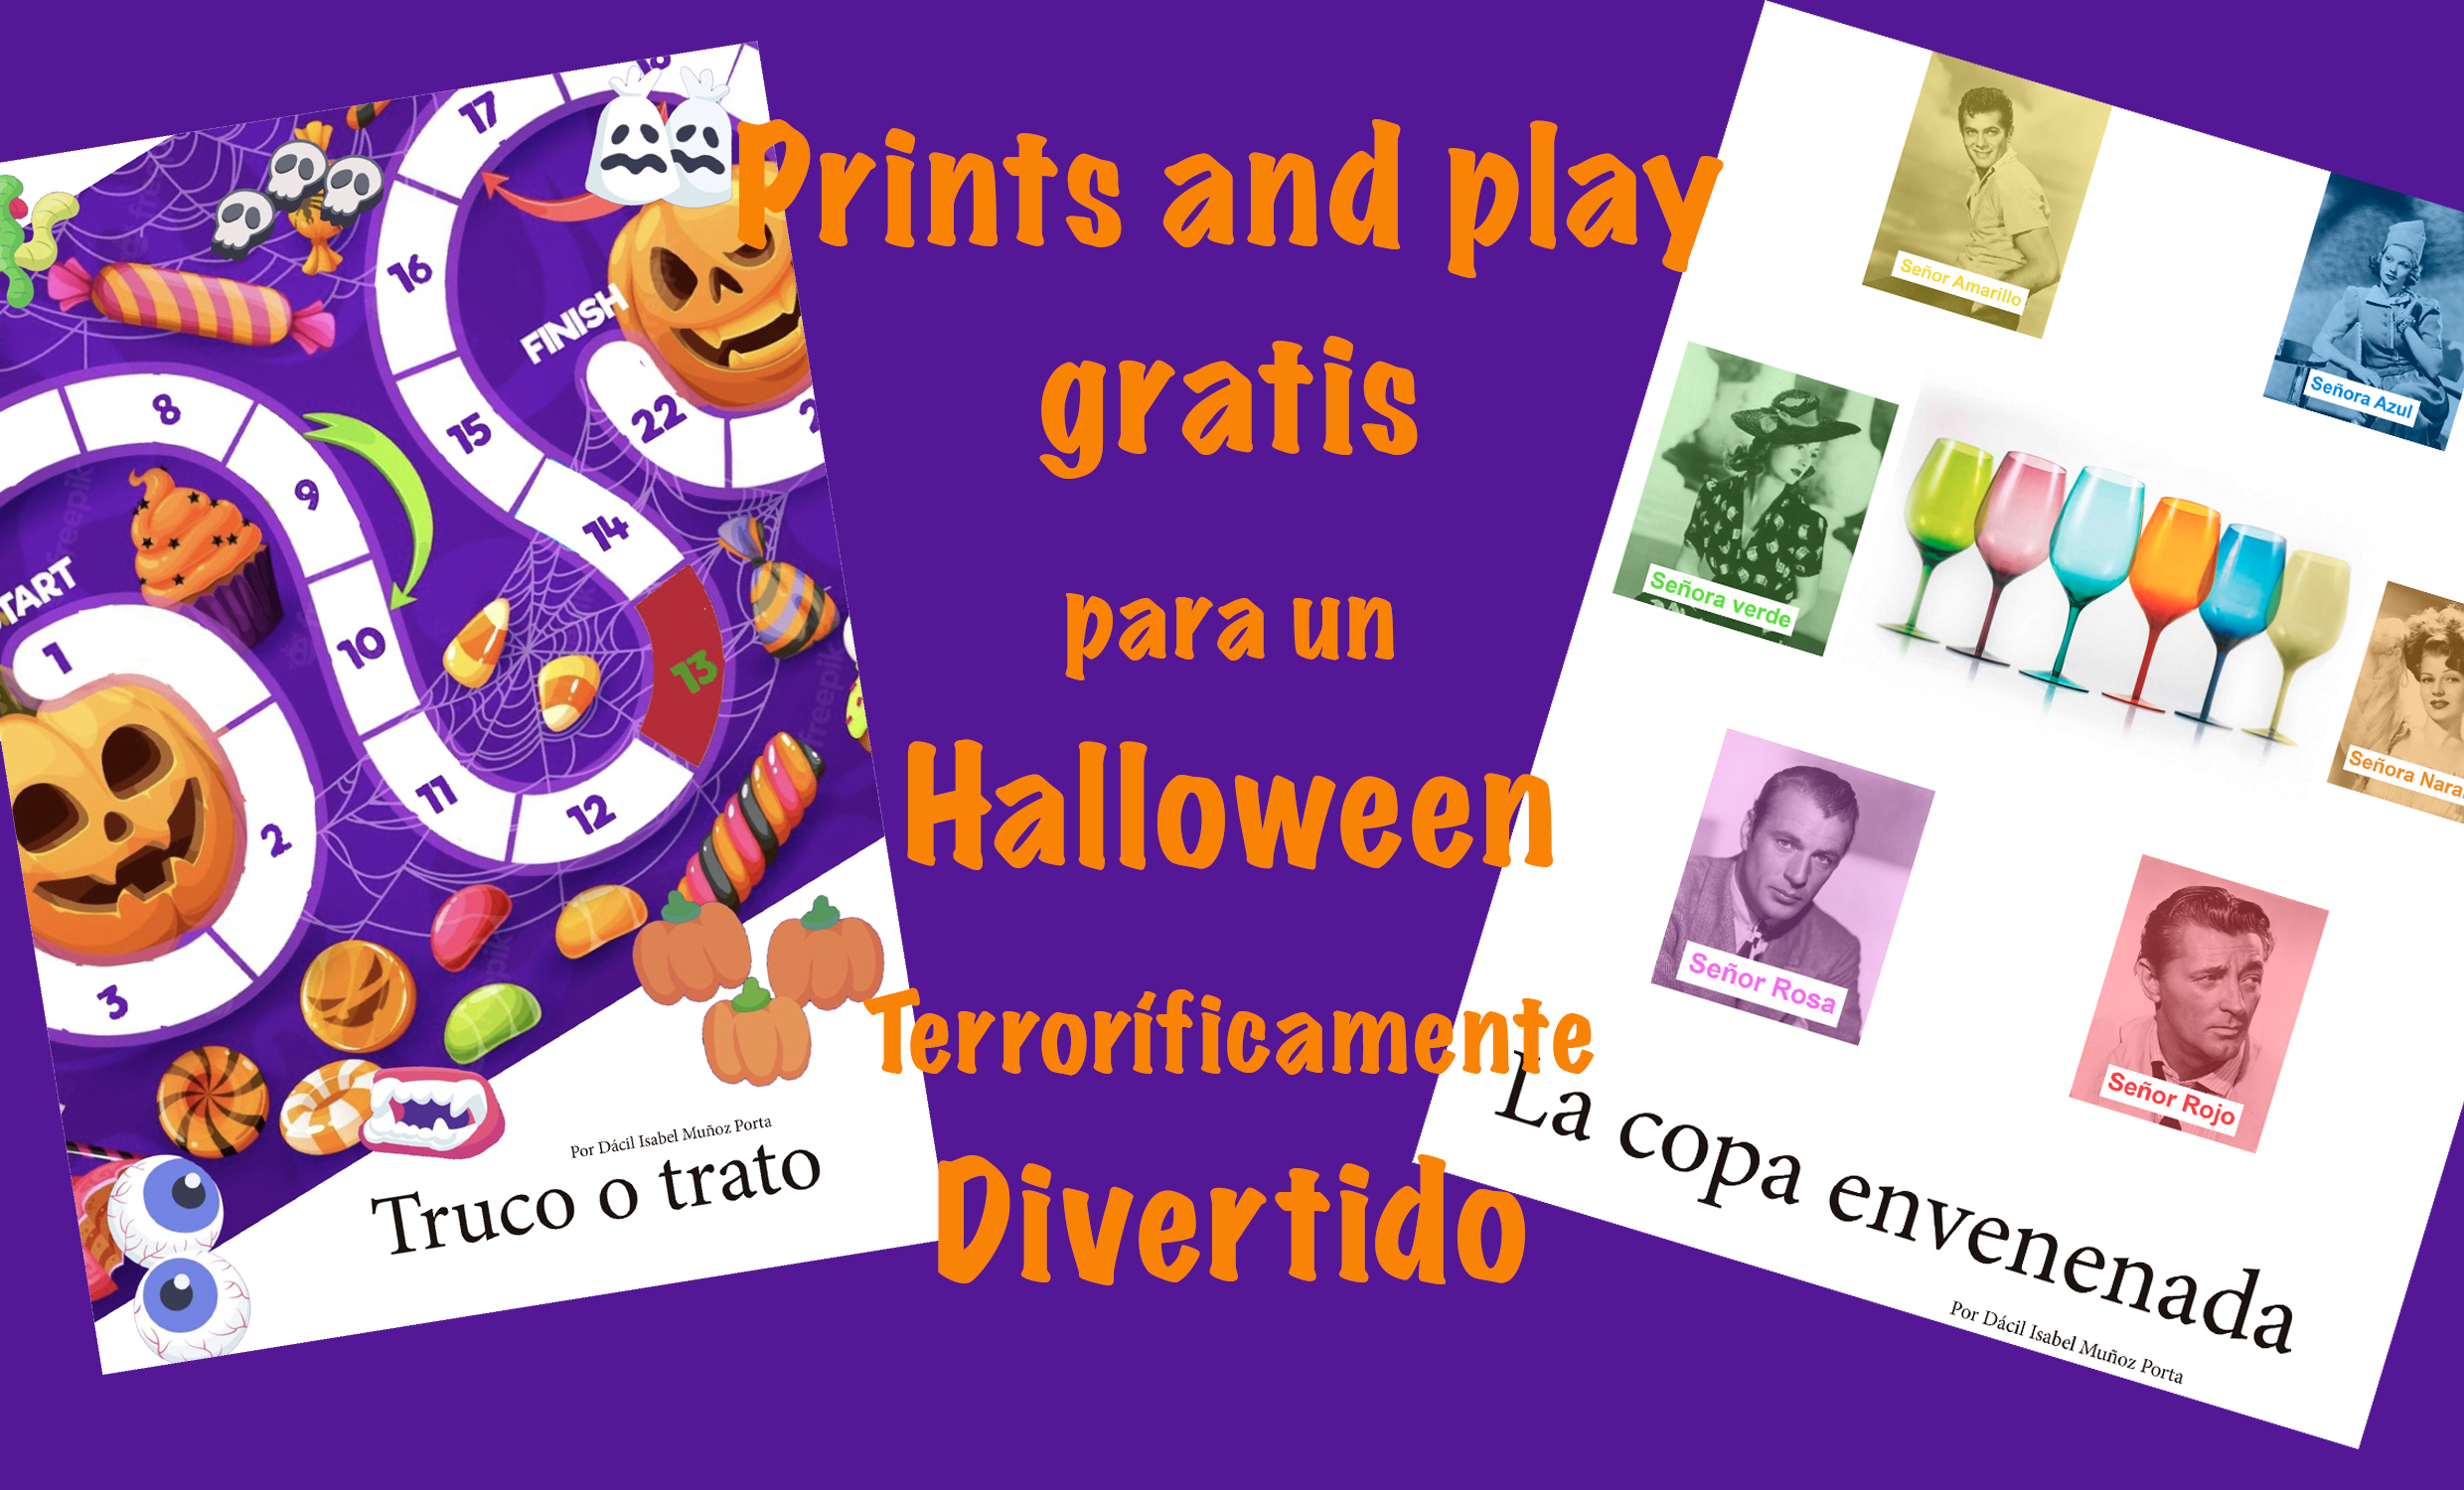 Juegos print and play gratis para la terrorífica noche de Halloween